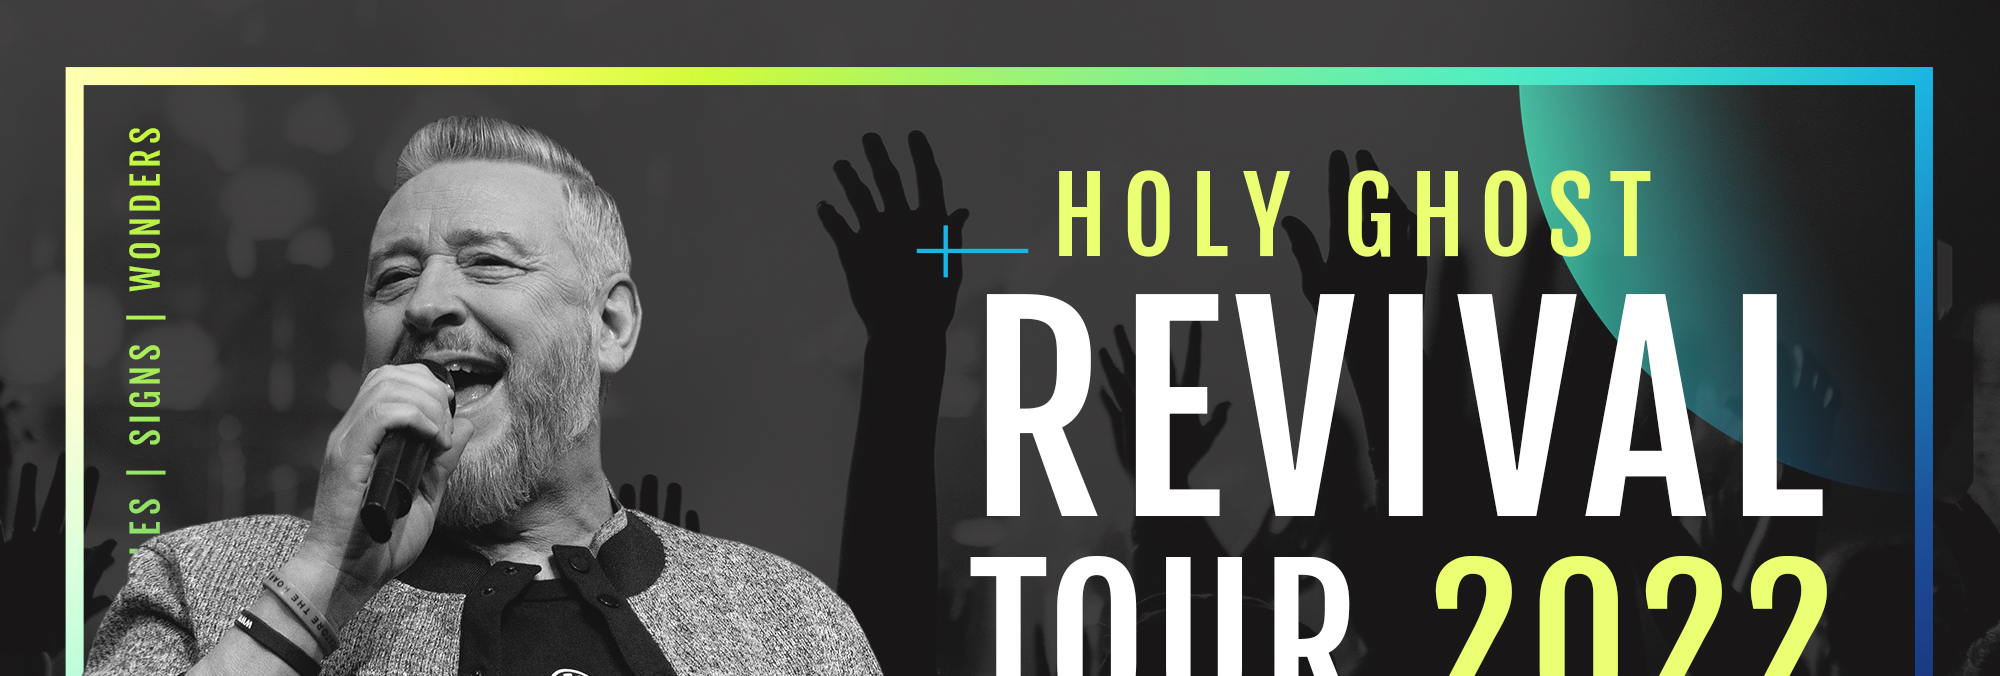 Pastor Rod Parsley Revival Tour 2022